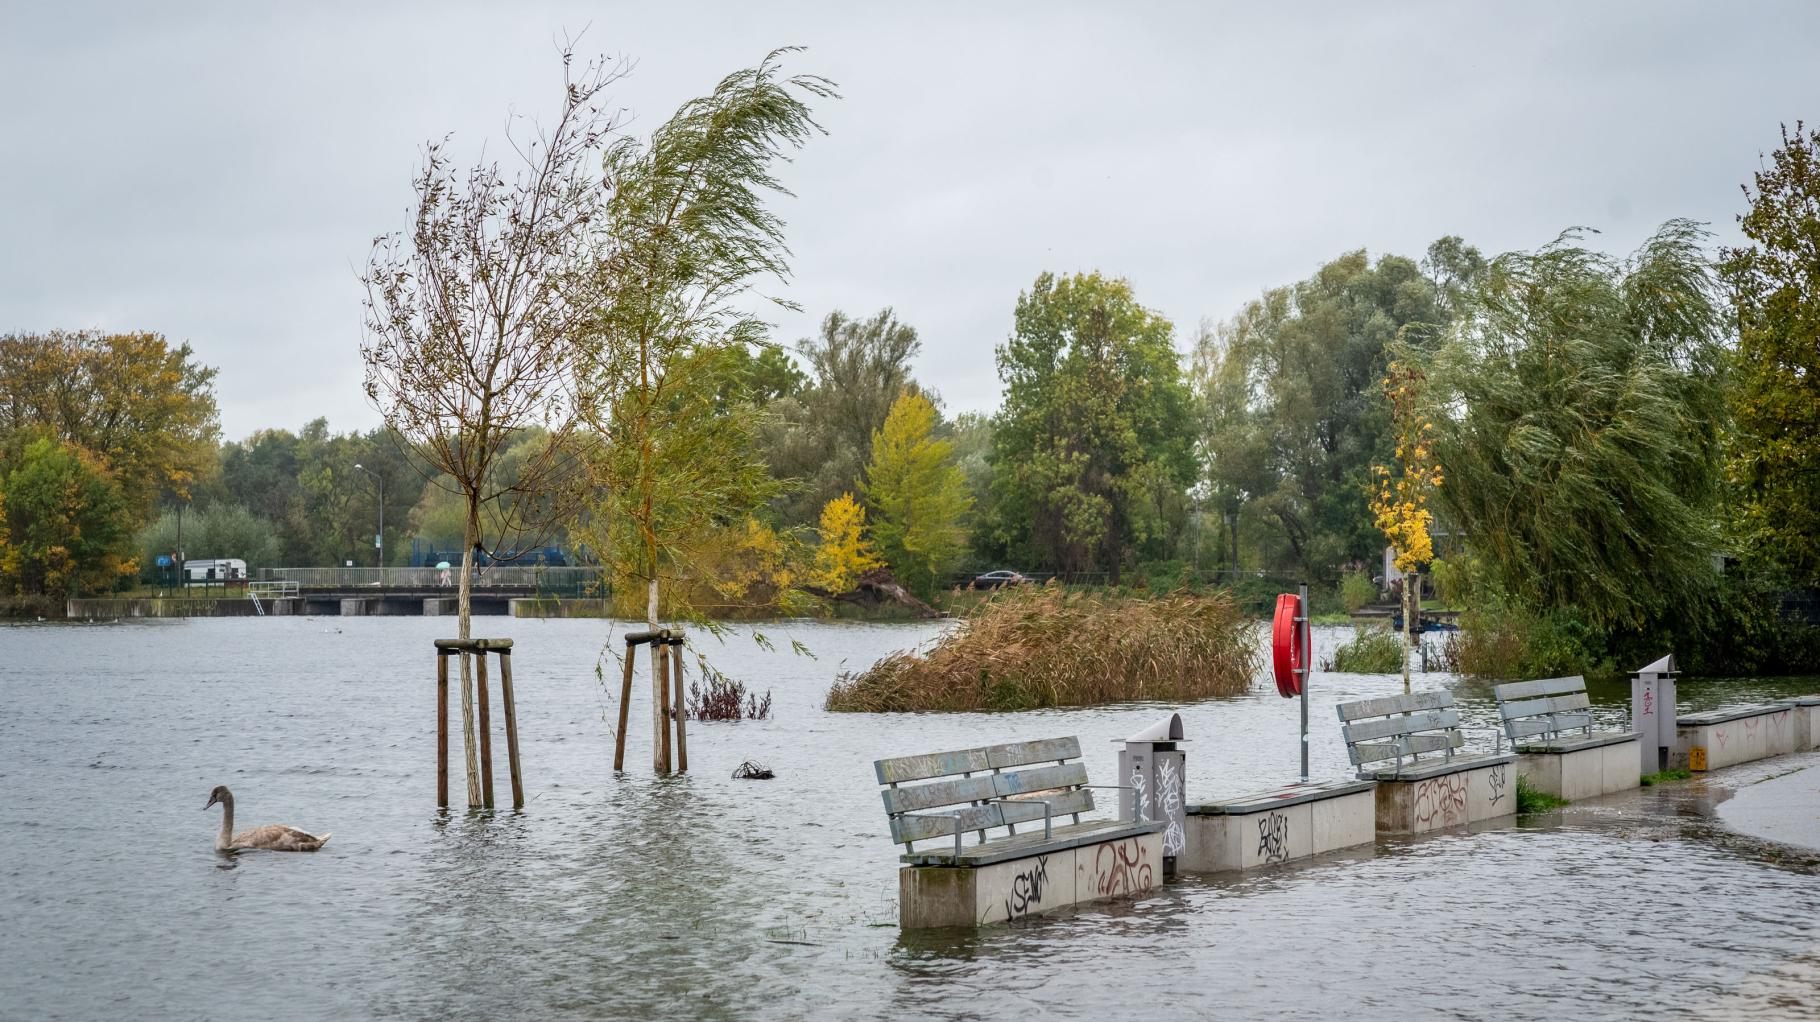 Bilder aus Rostock: Hochwasser sorgt für überschwemmte Ufer an der Warnow